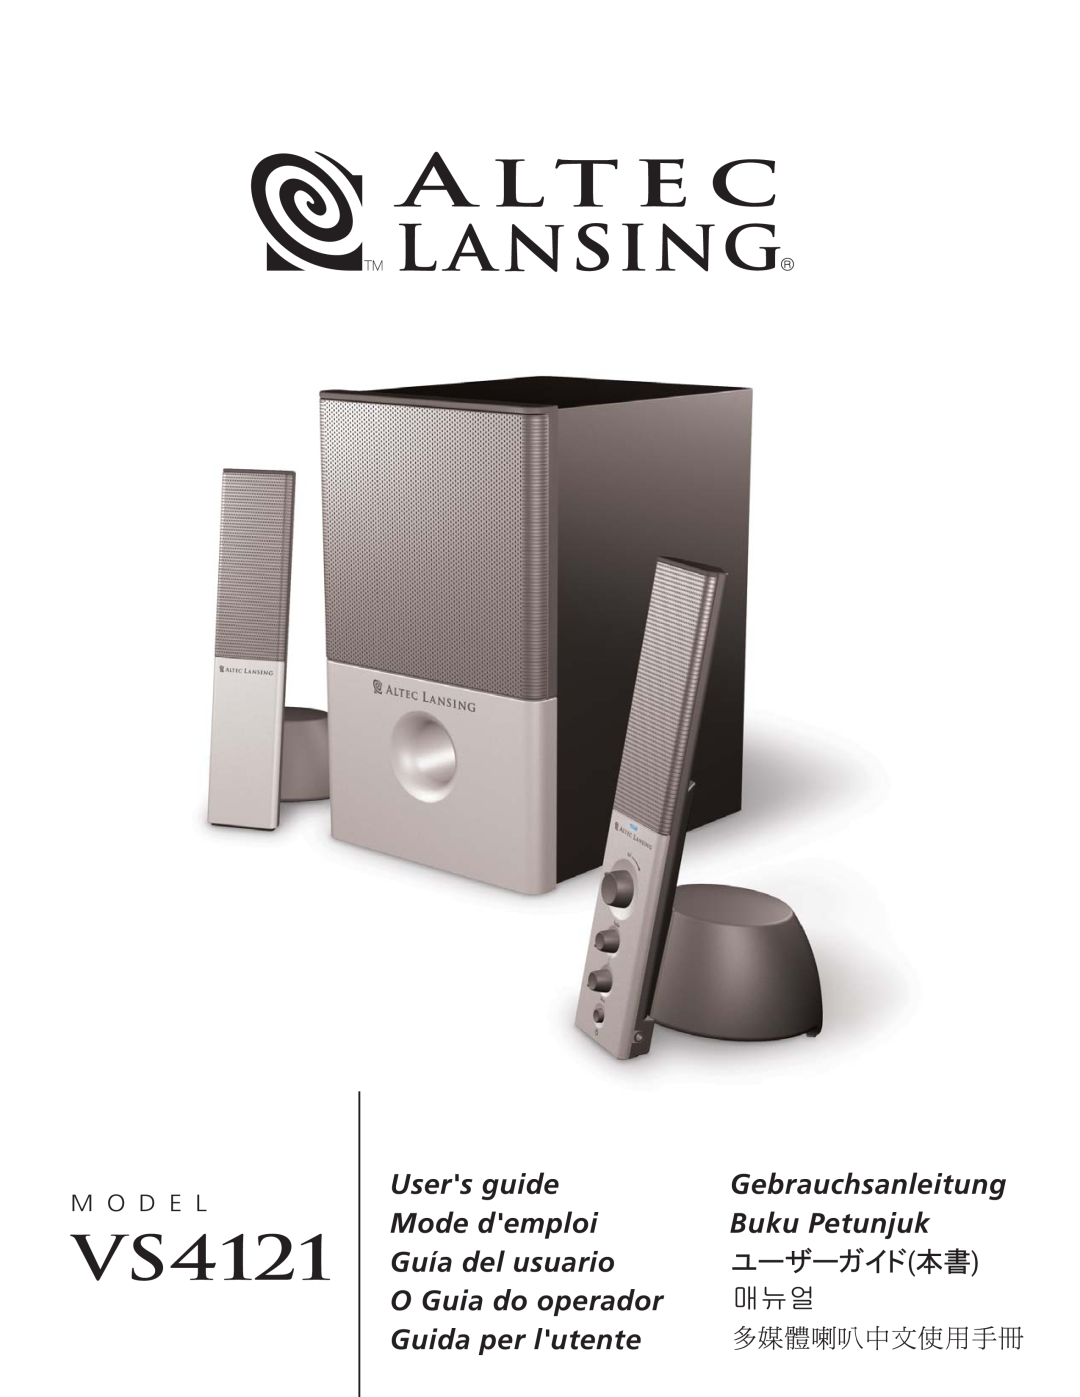 Altec Lansing VS4121 manual Users guide, Gebrauchsanleitung, Mode demploi, Buku Petunjuk, Guía del usuario, M O D E L 